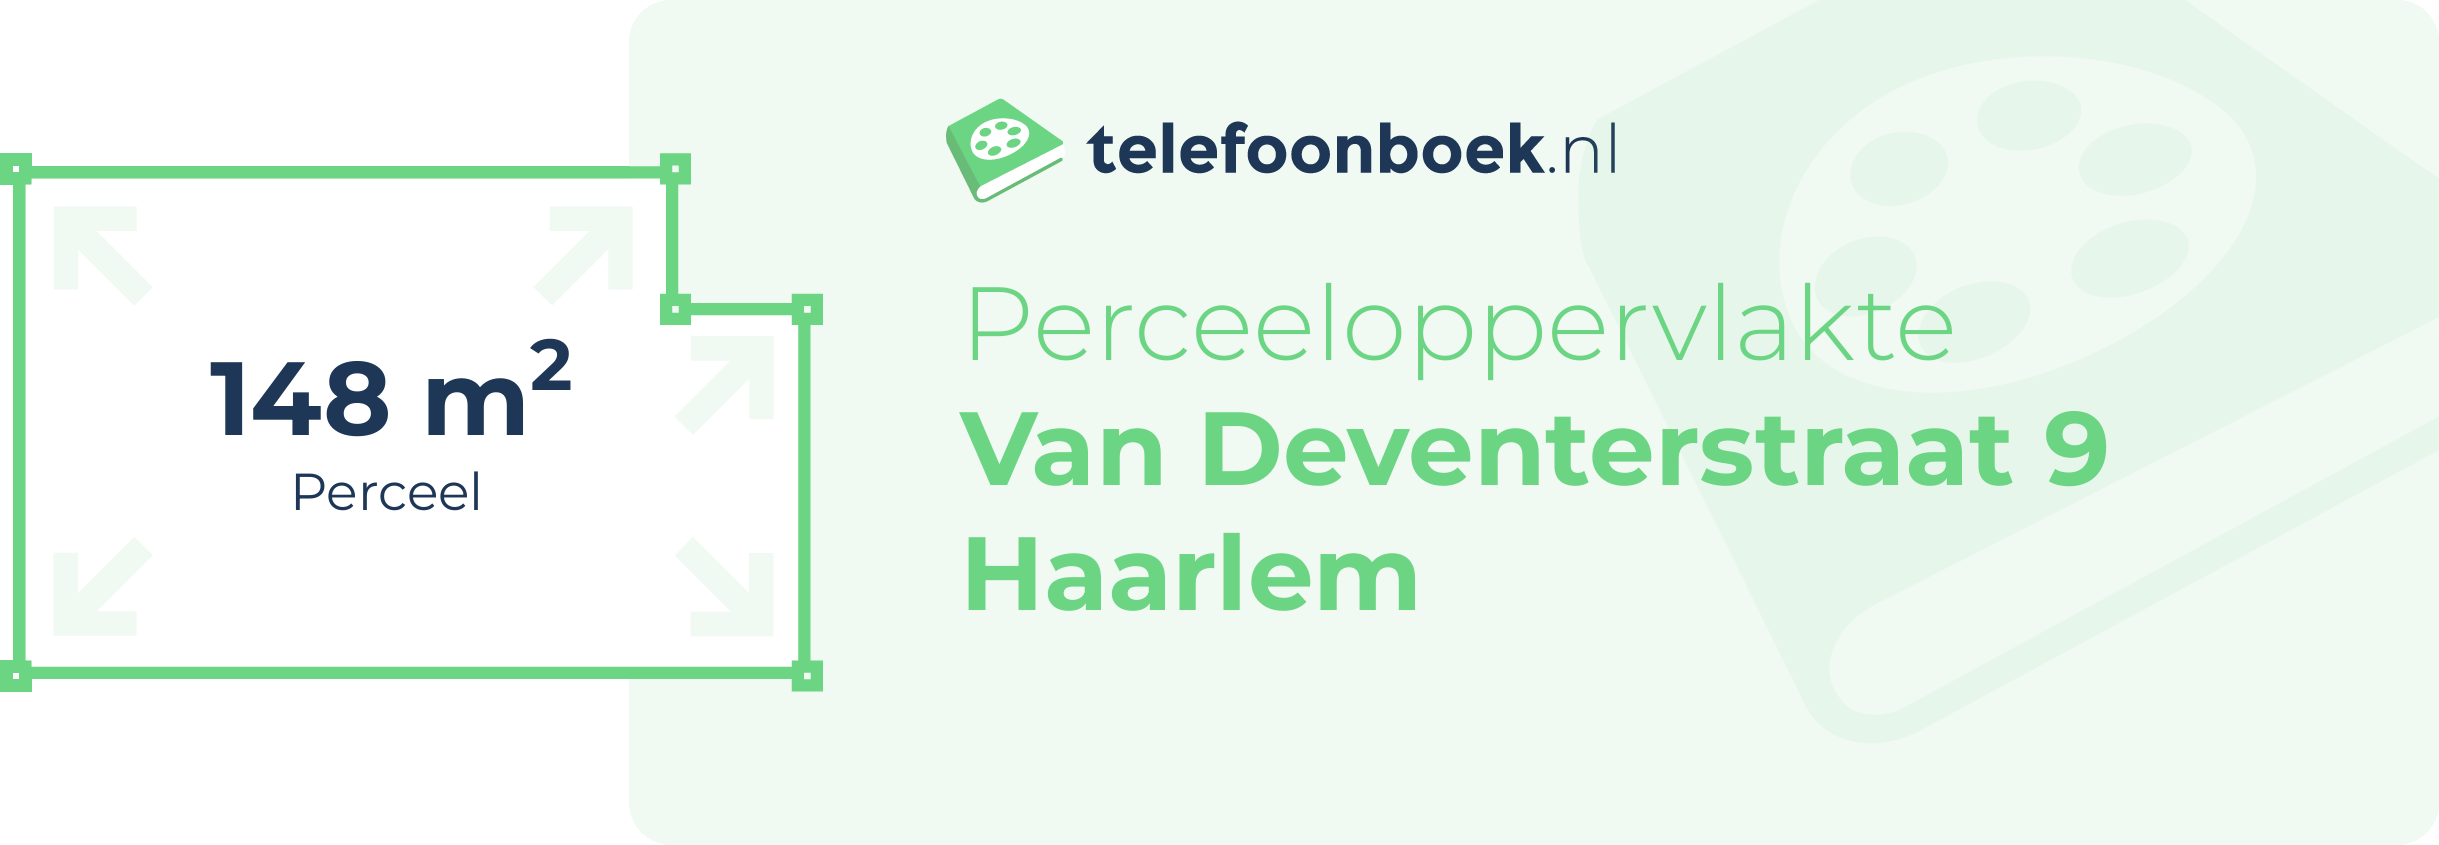 Perceeloppervlakte Van Deventerstraat 9 Haarlem